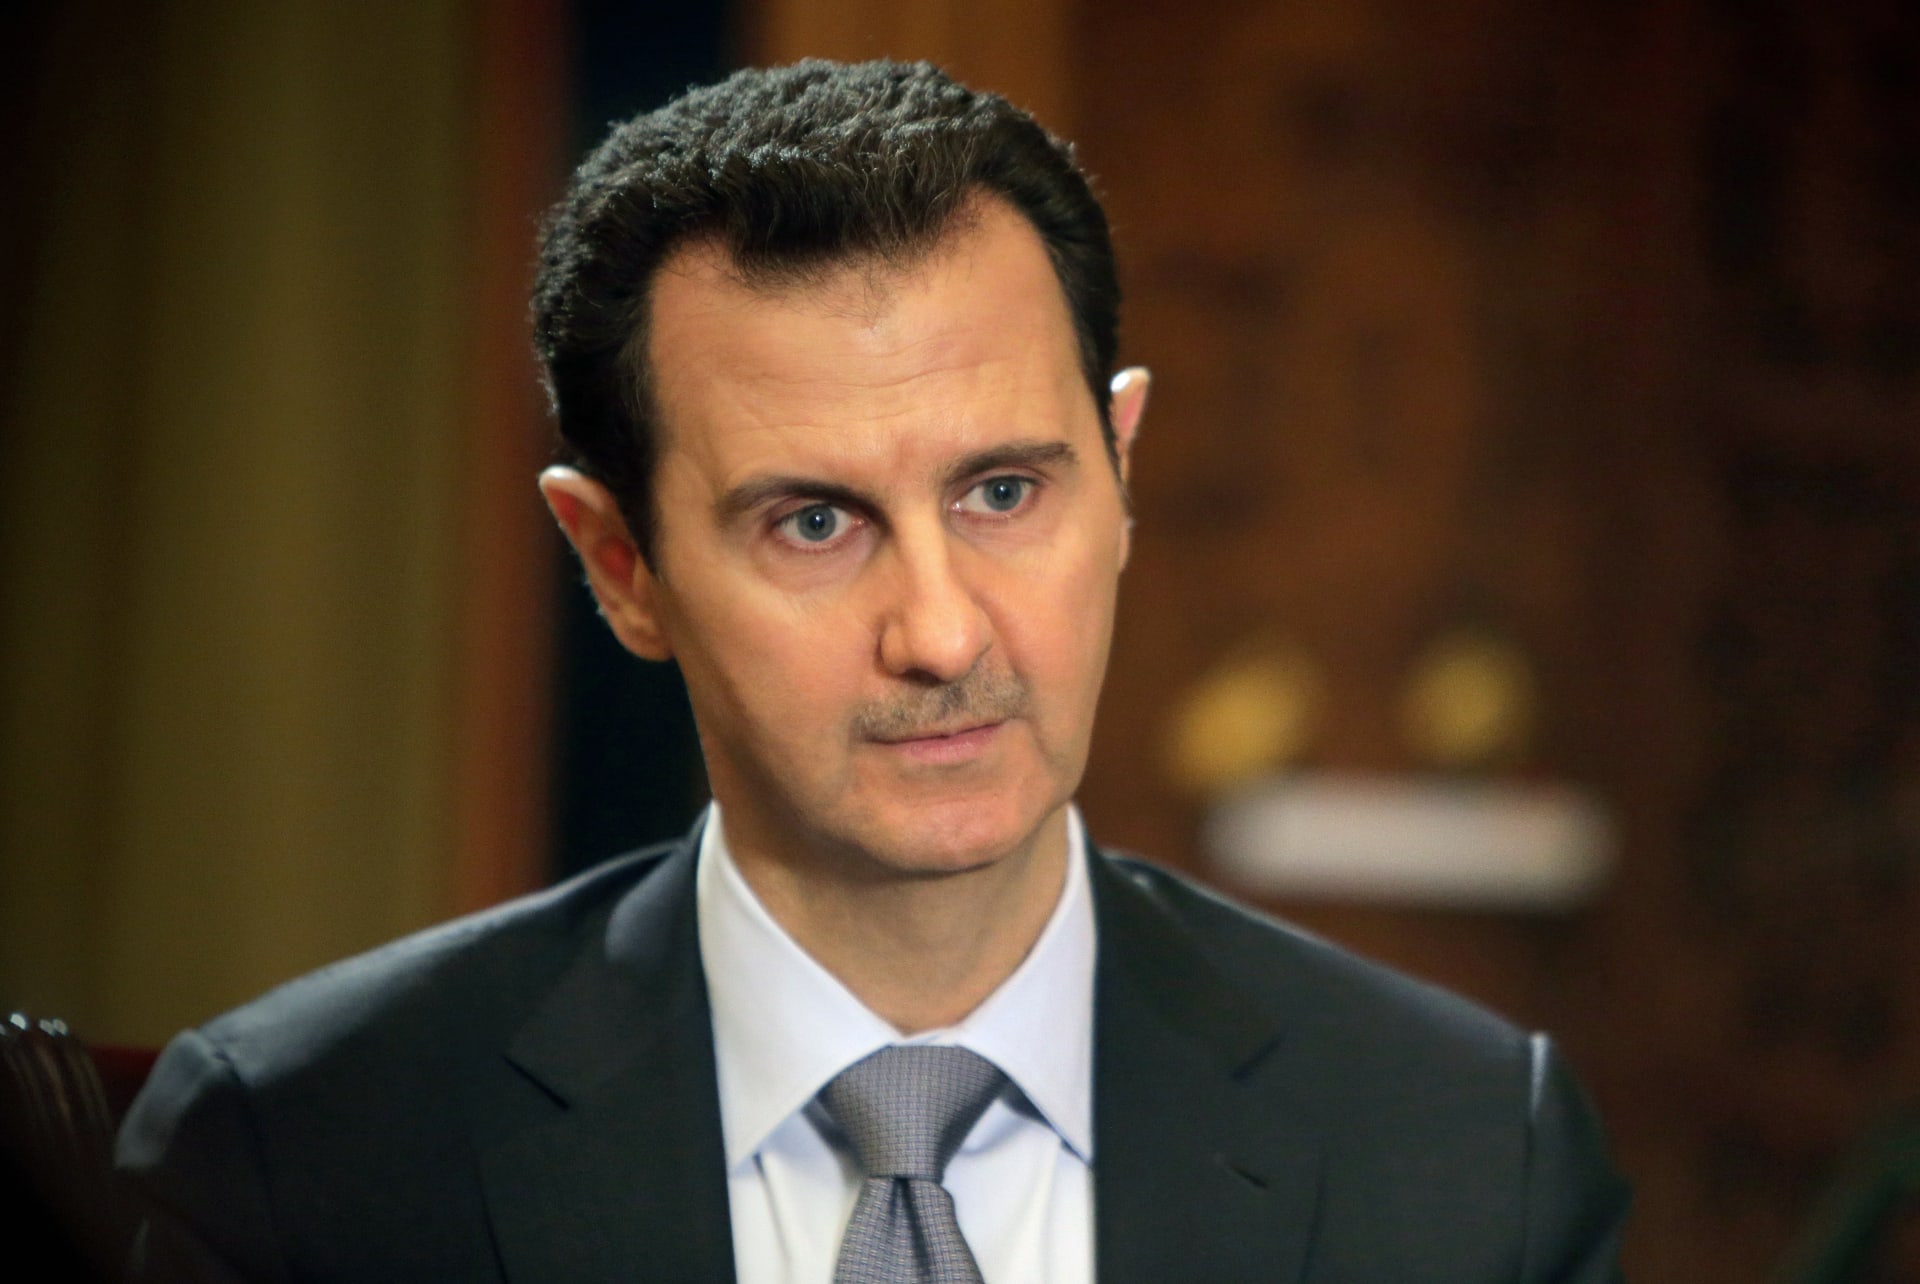 الأسد يخاطب المعارضة رغم أصابع الاتهام الأمريكية والسعودية والسورية: تخلوا عن أسلحتكم وسأمنحكم العفو